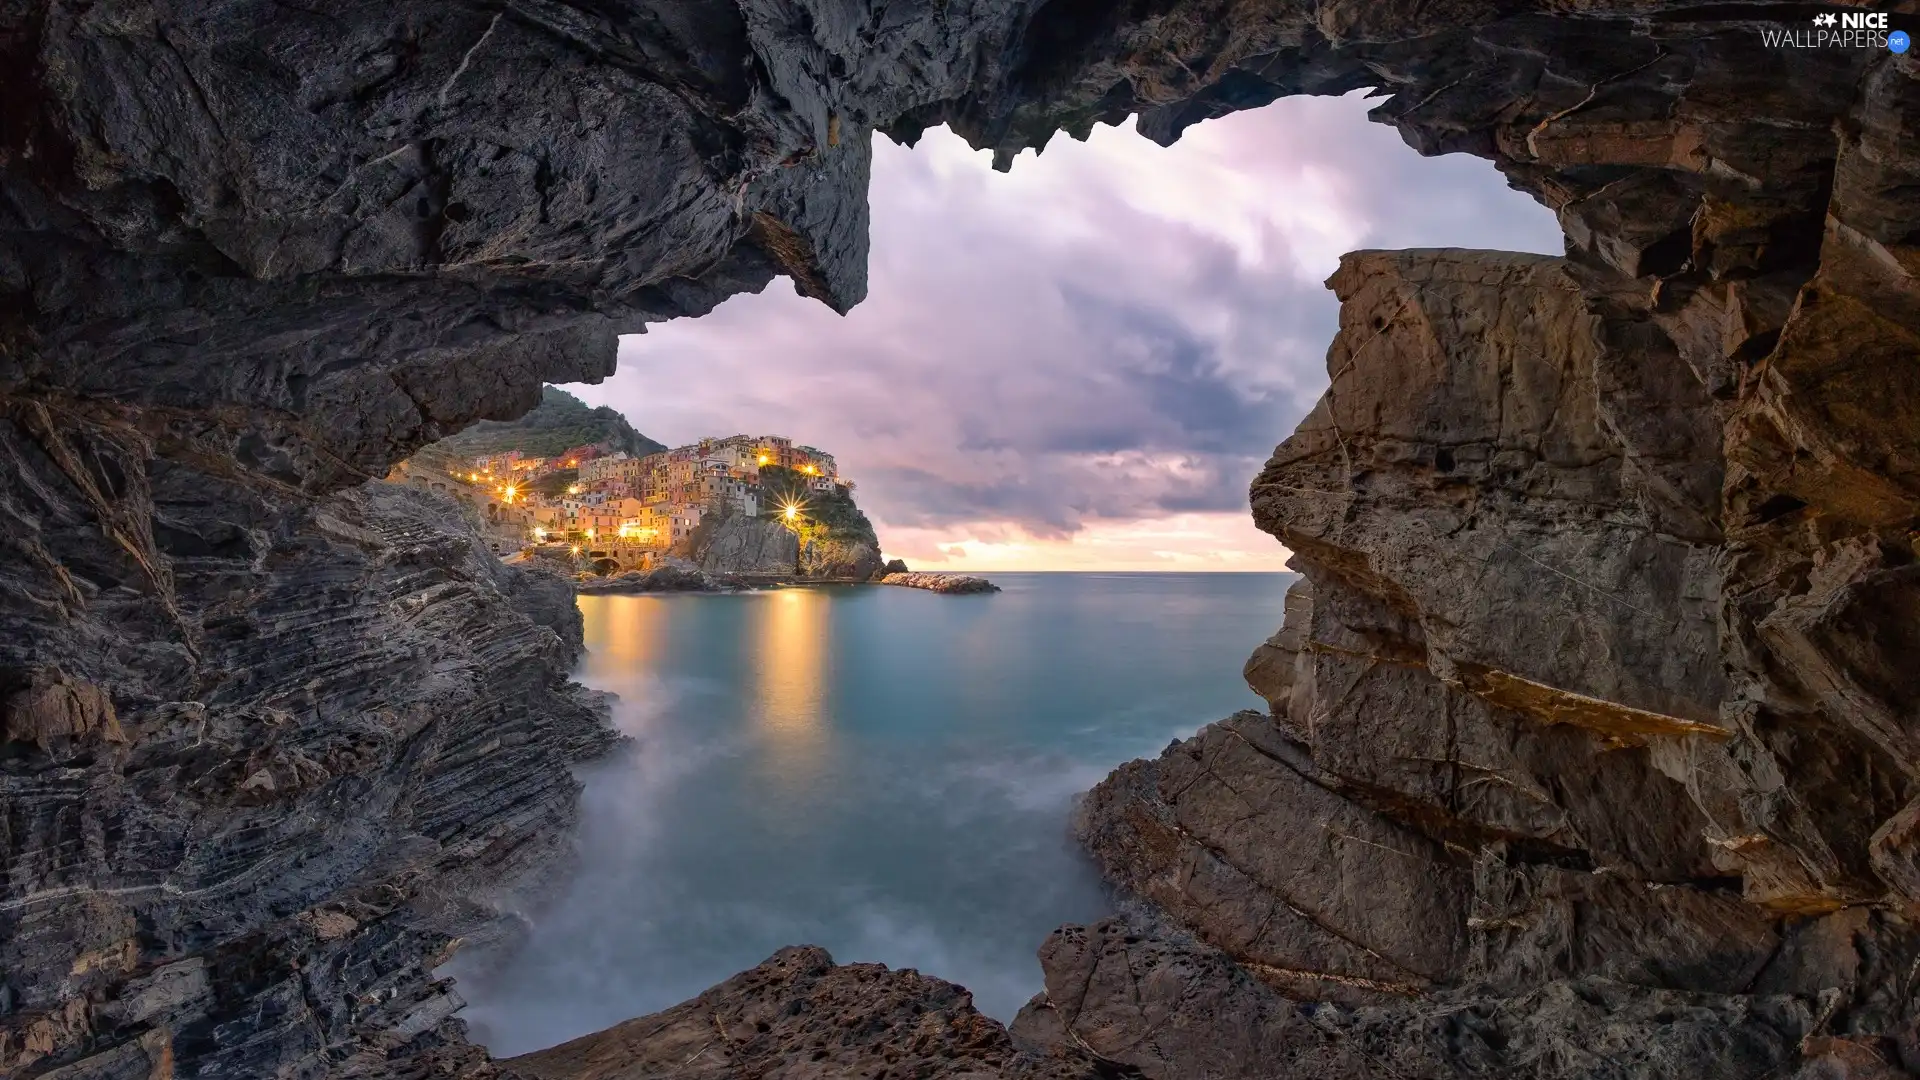 Houses, Riomaggiore Municipality, Cinque Terre, clouds, Ligurian Sea, Italy, Manarola, rocks, light, color